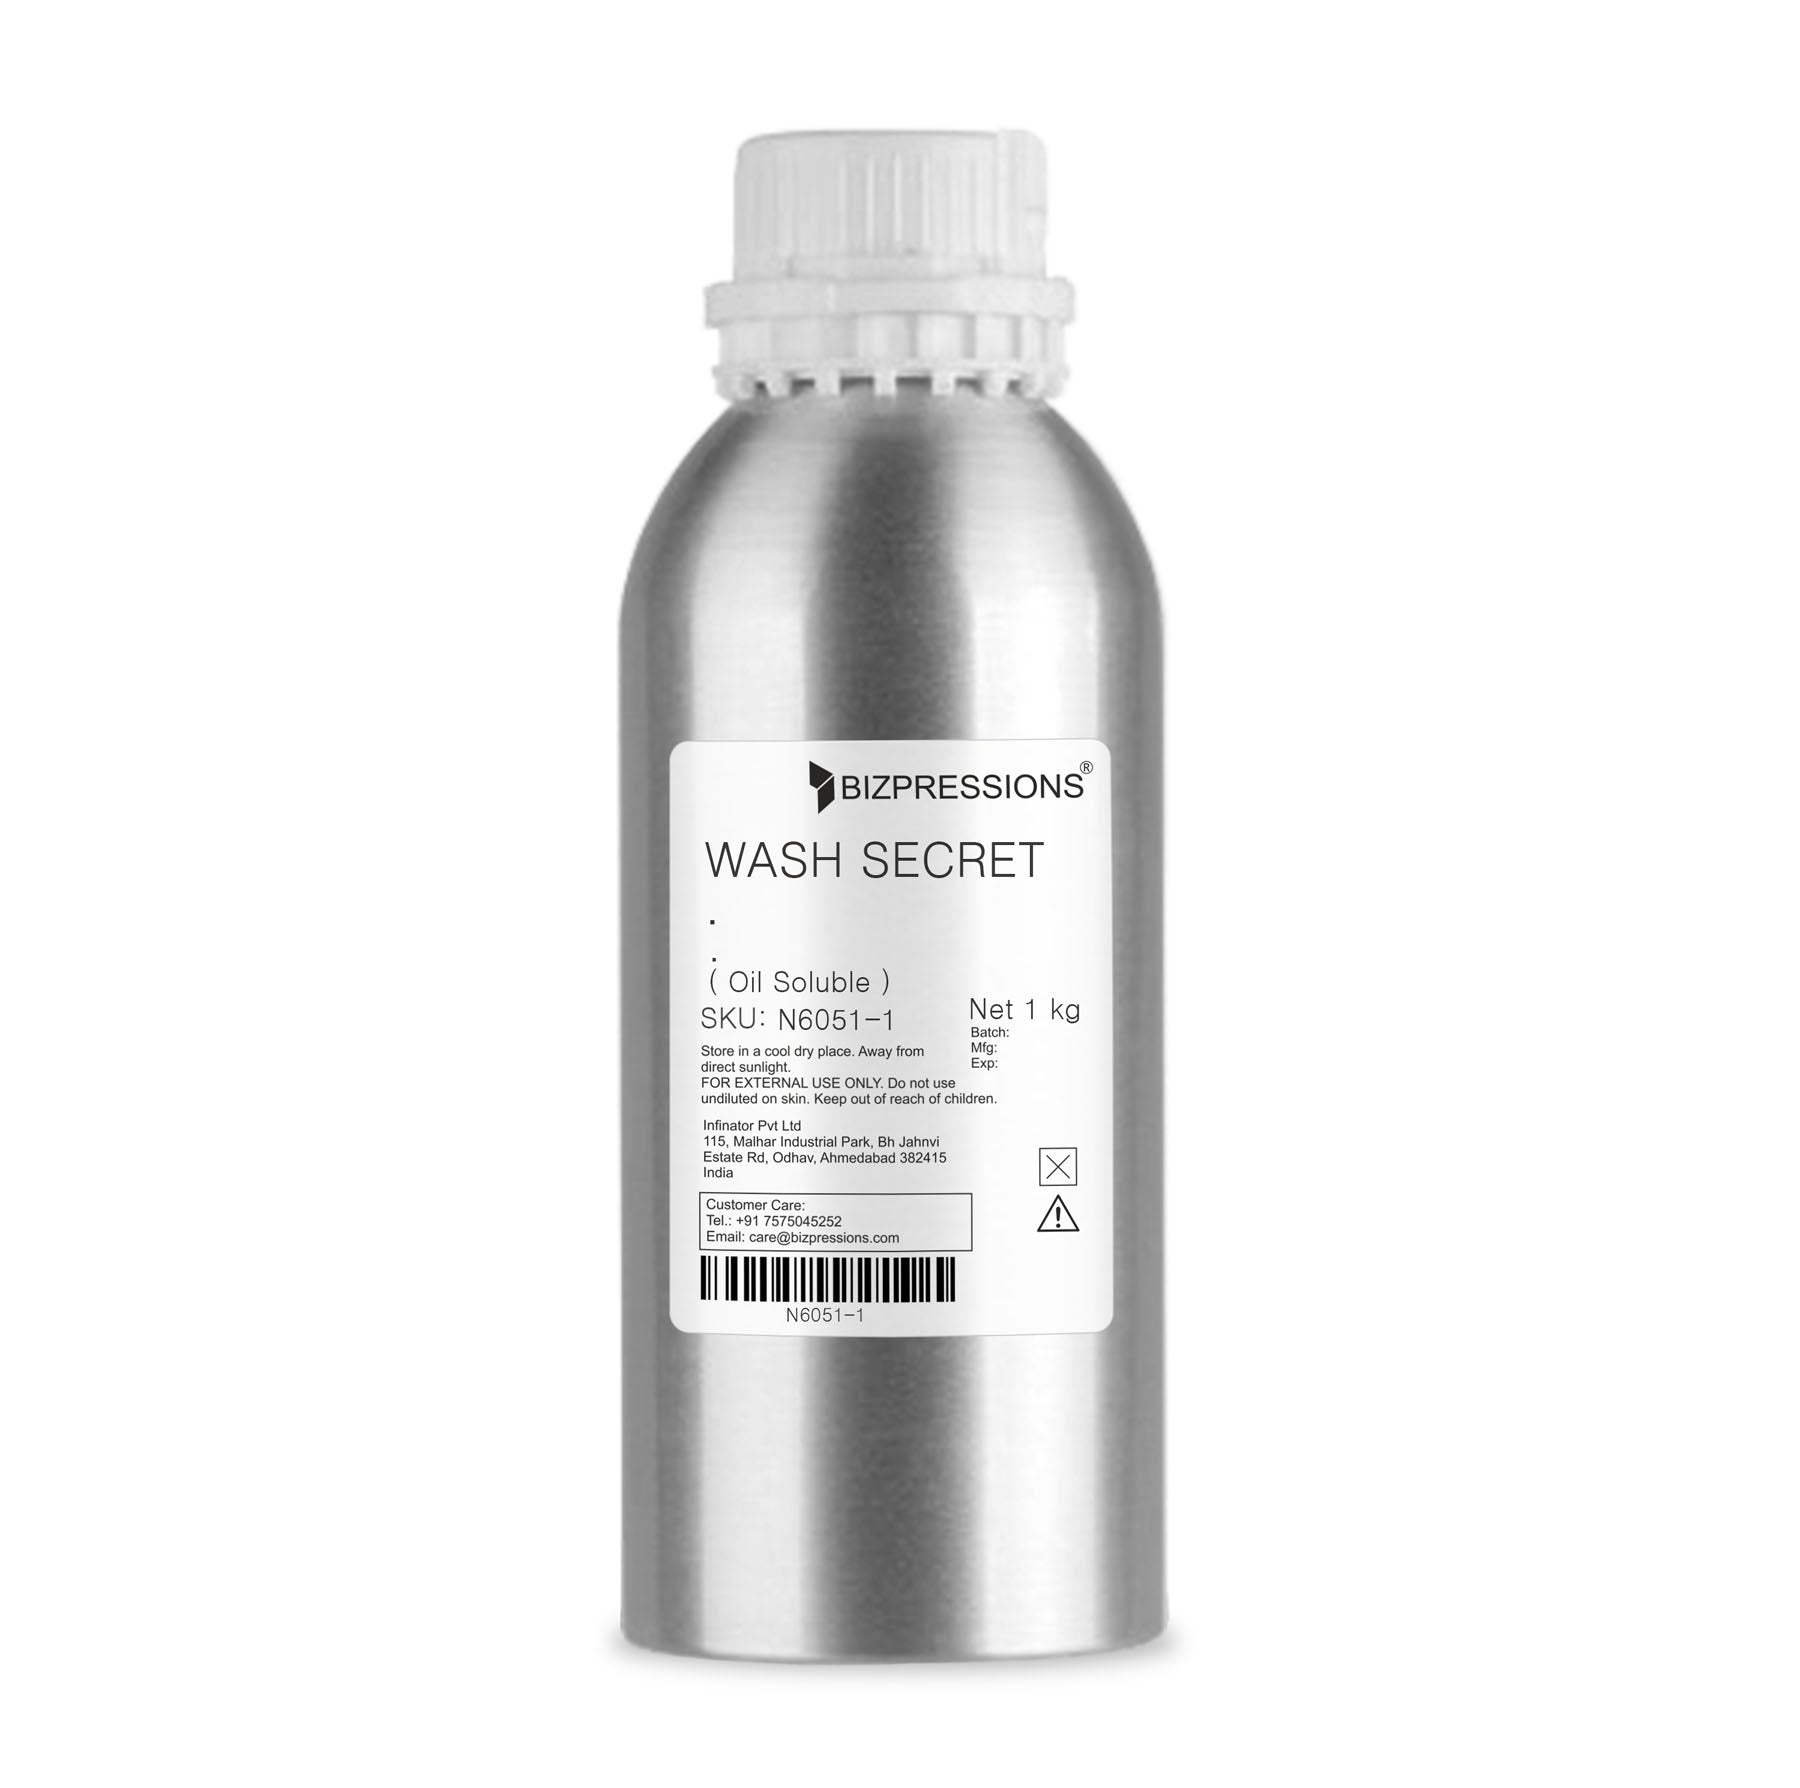 WASH SECRET - Fragrance ( Oil Soluble ) - 1 kg